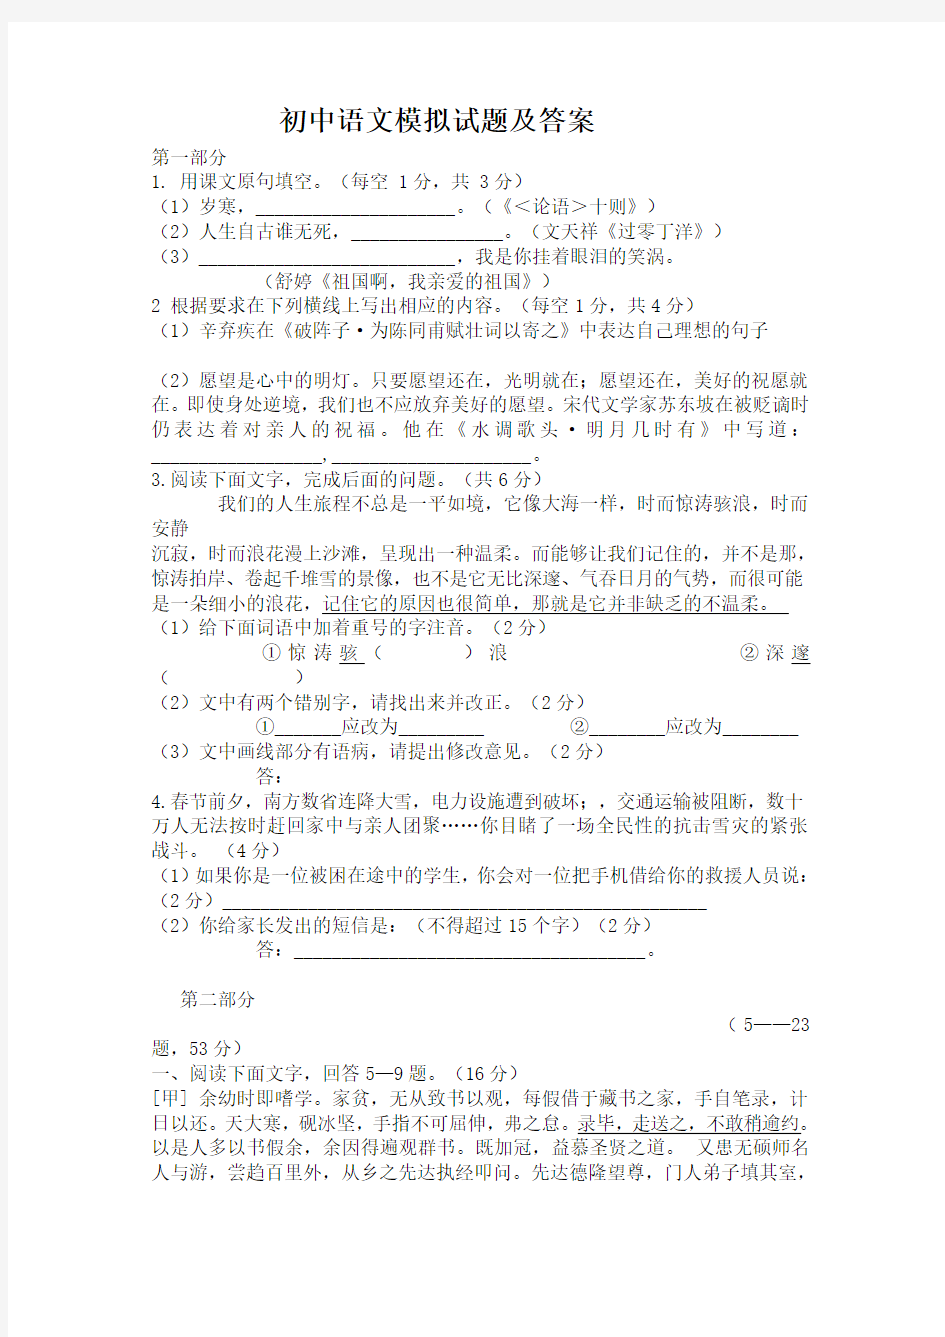 完整word版,初中语文模拟试题及答案